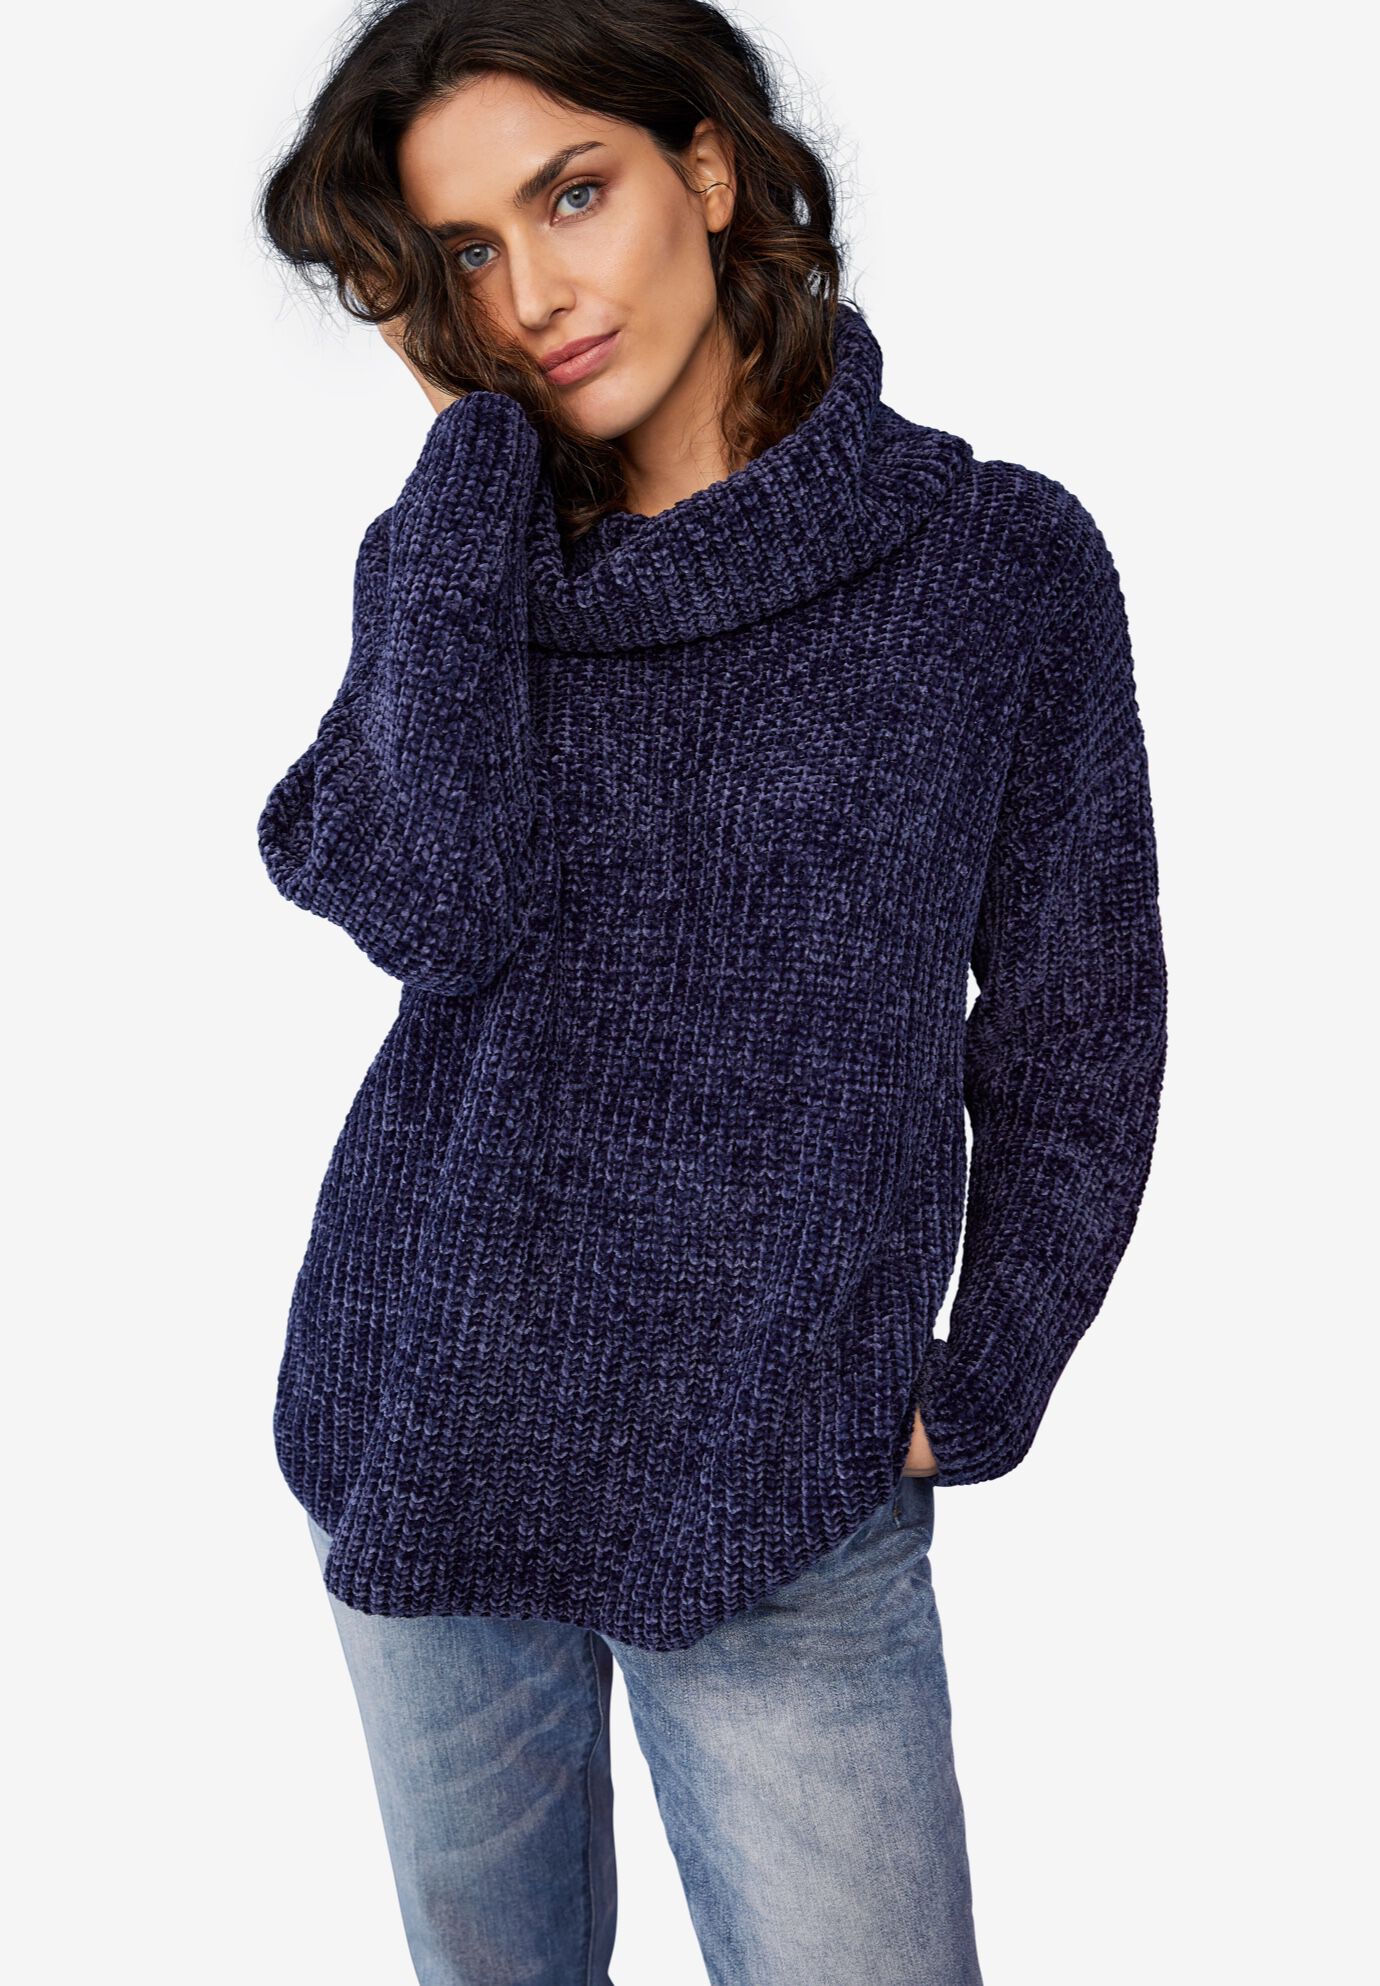 Chenille Turtleneck Sweater | Roaman's